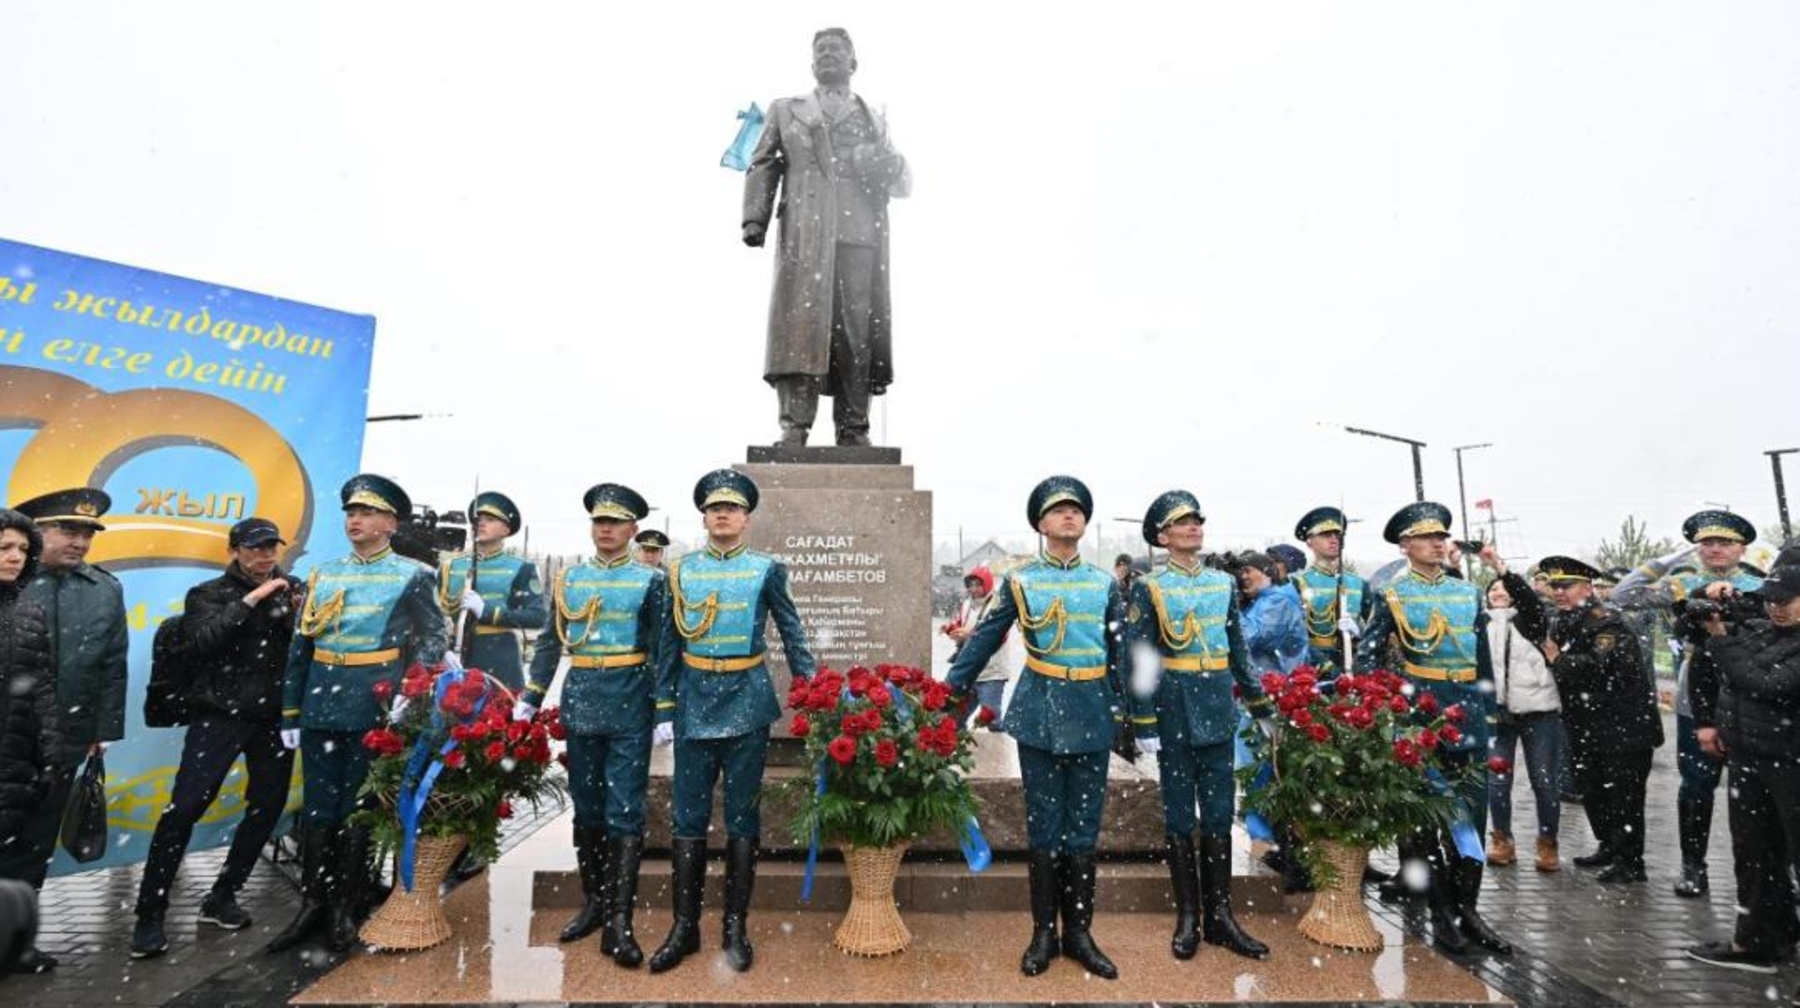 Памятник Сагадату Нурмагамбетову открыли в Акмолинской области